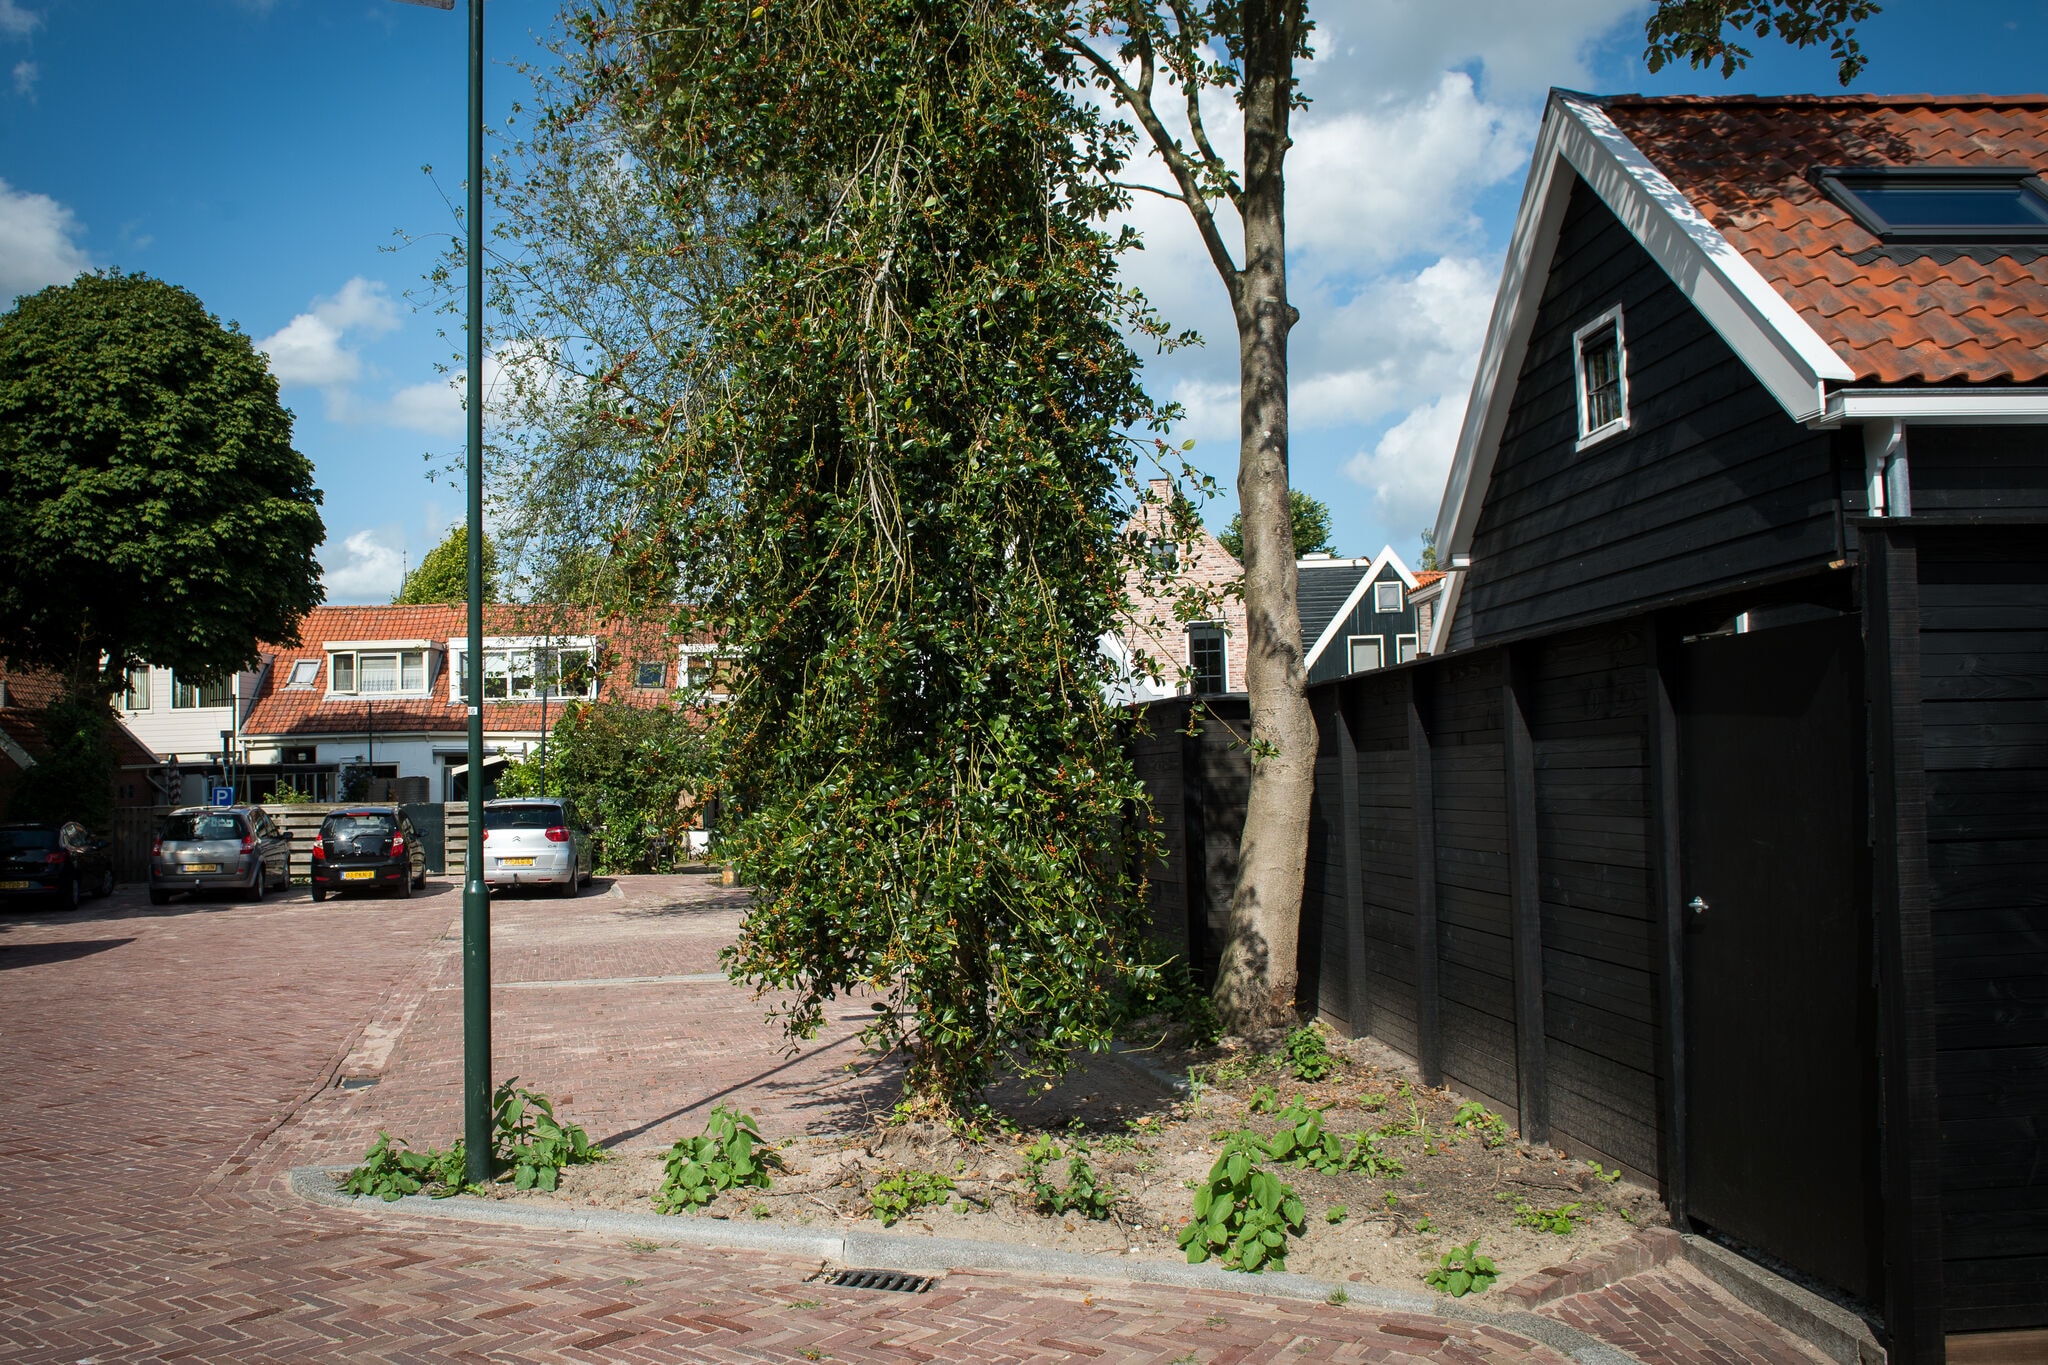 Chalet accueillant à Monnickendam avec jardin